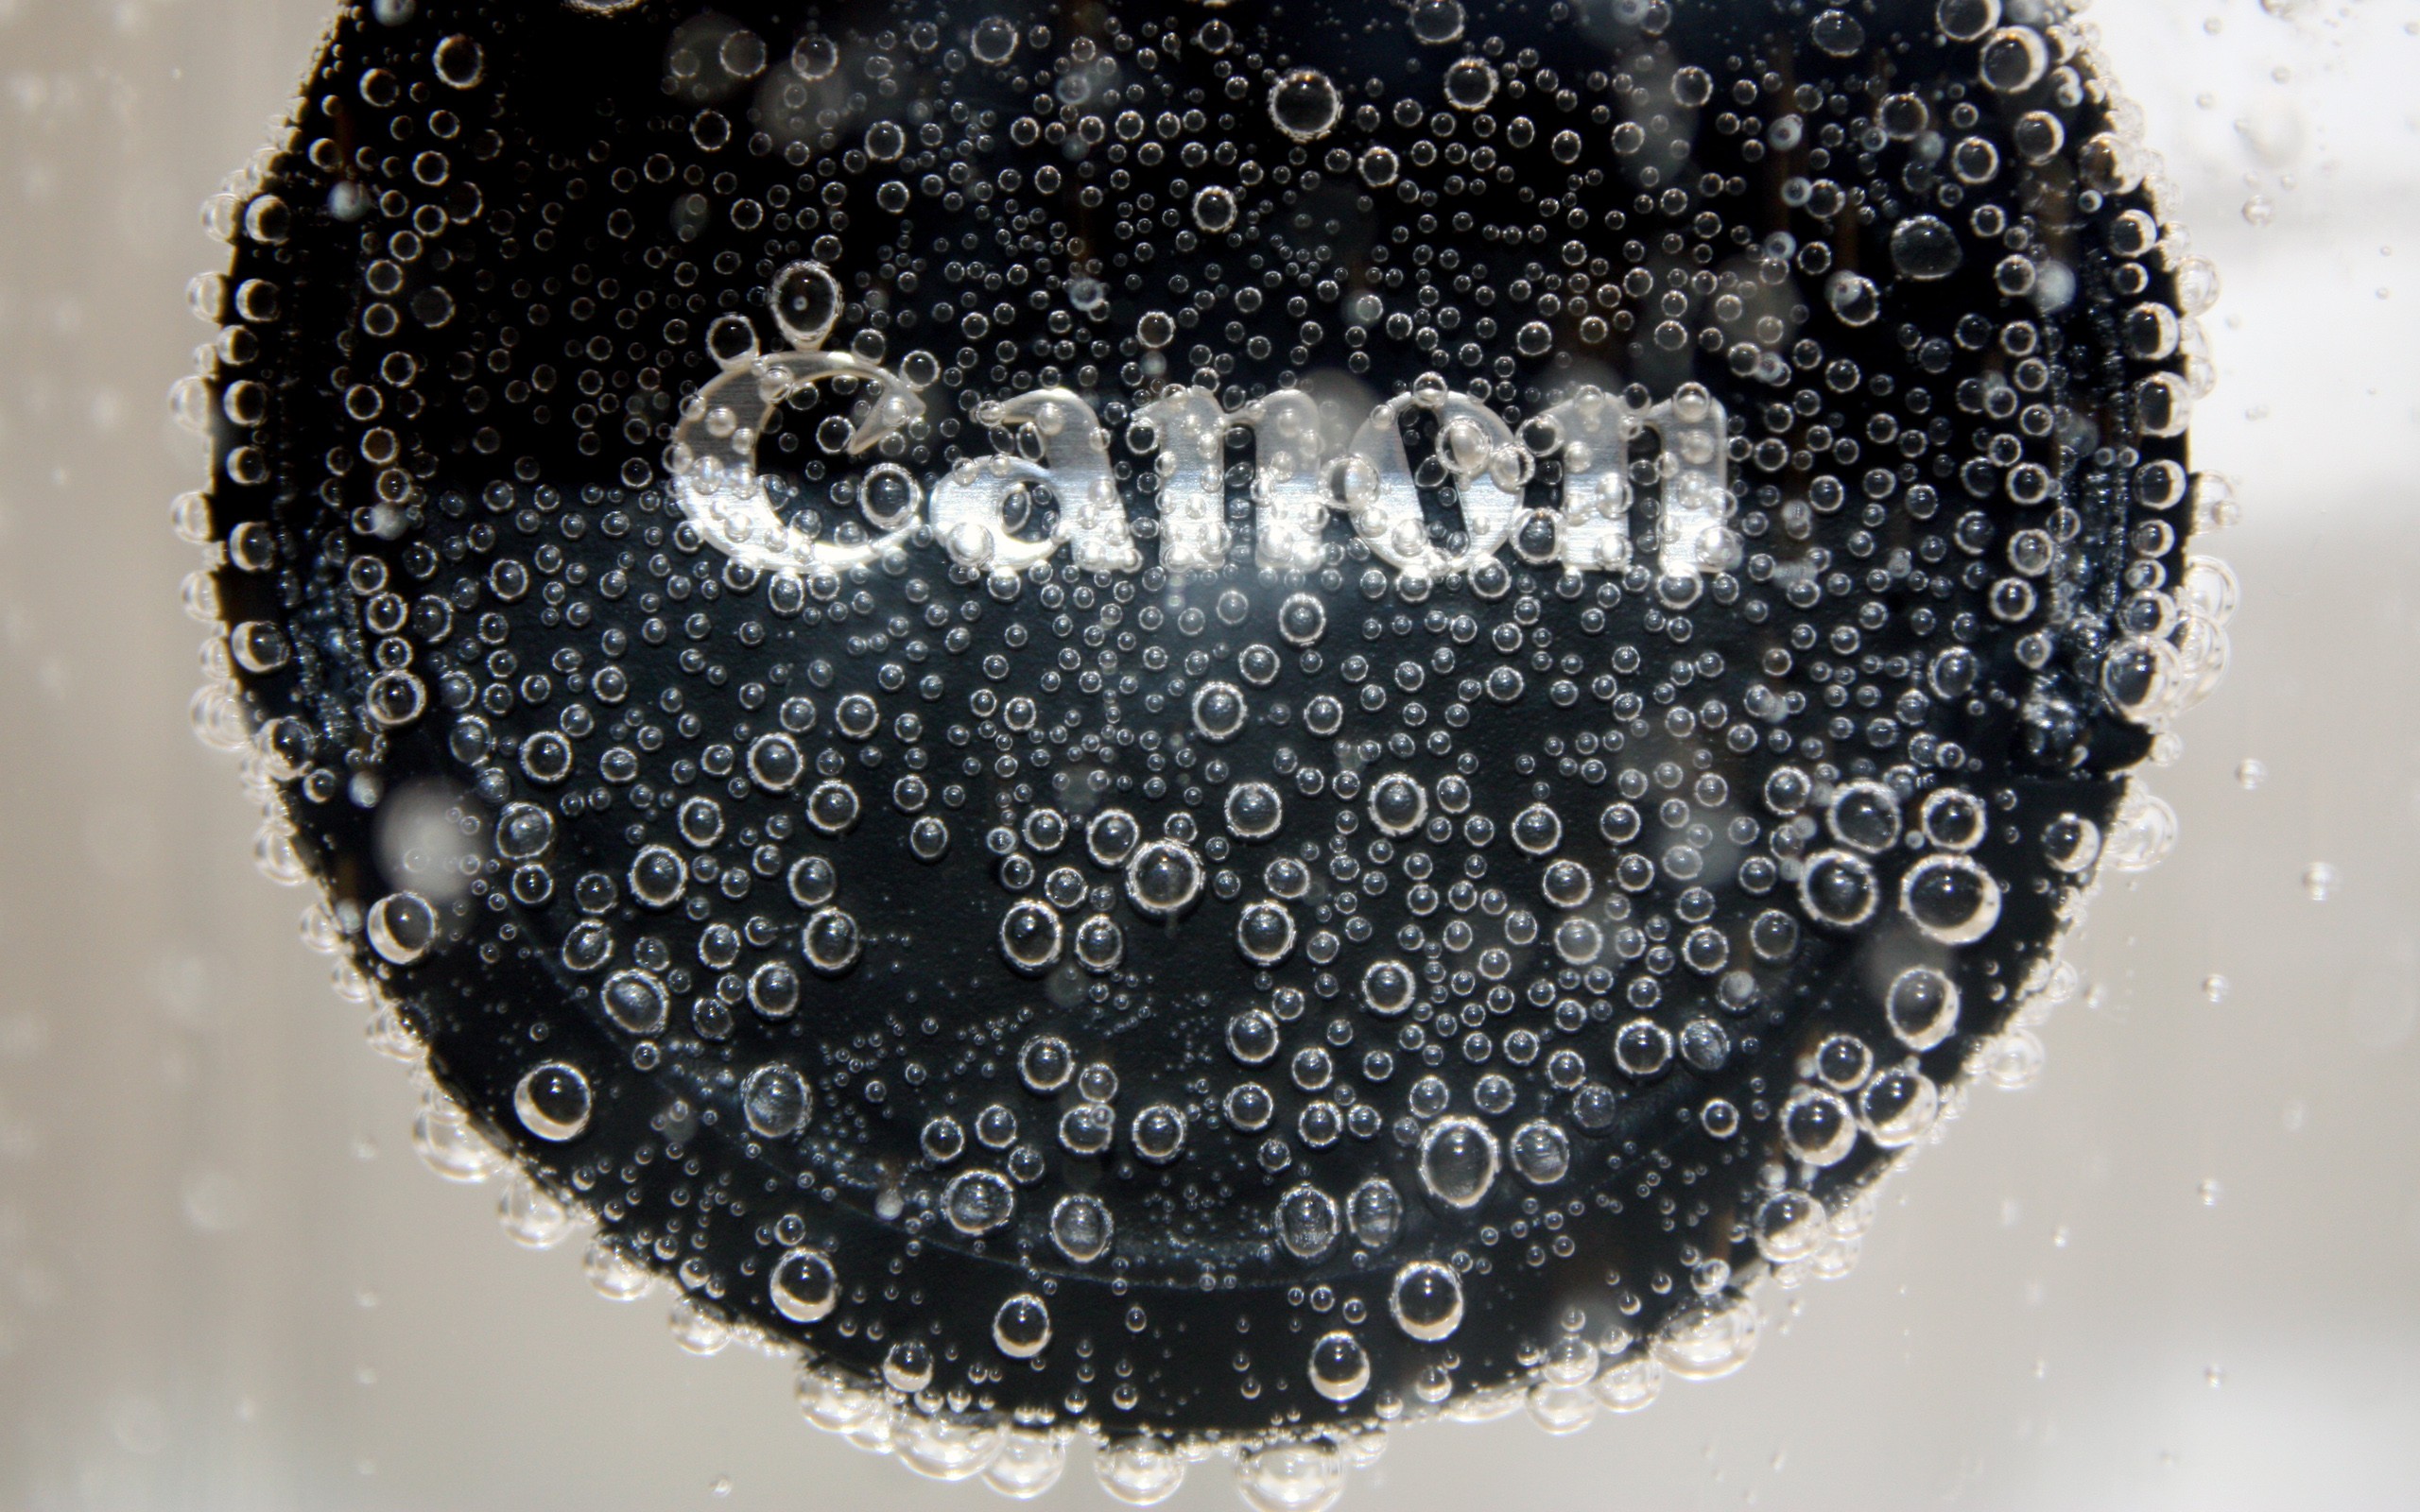 water, bubbles - desktop wallpaper